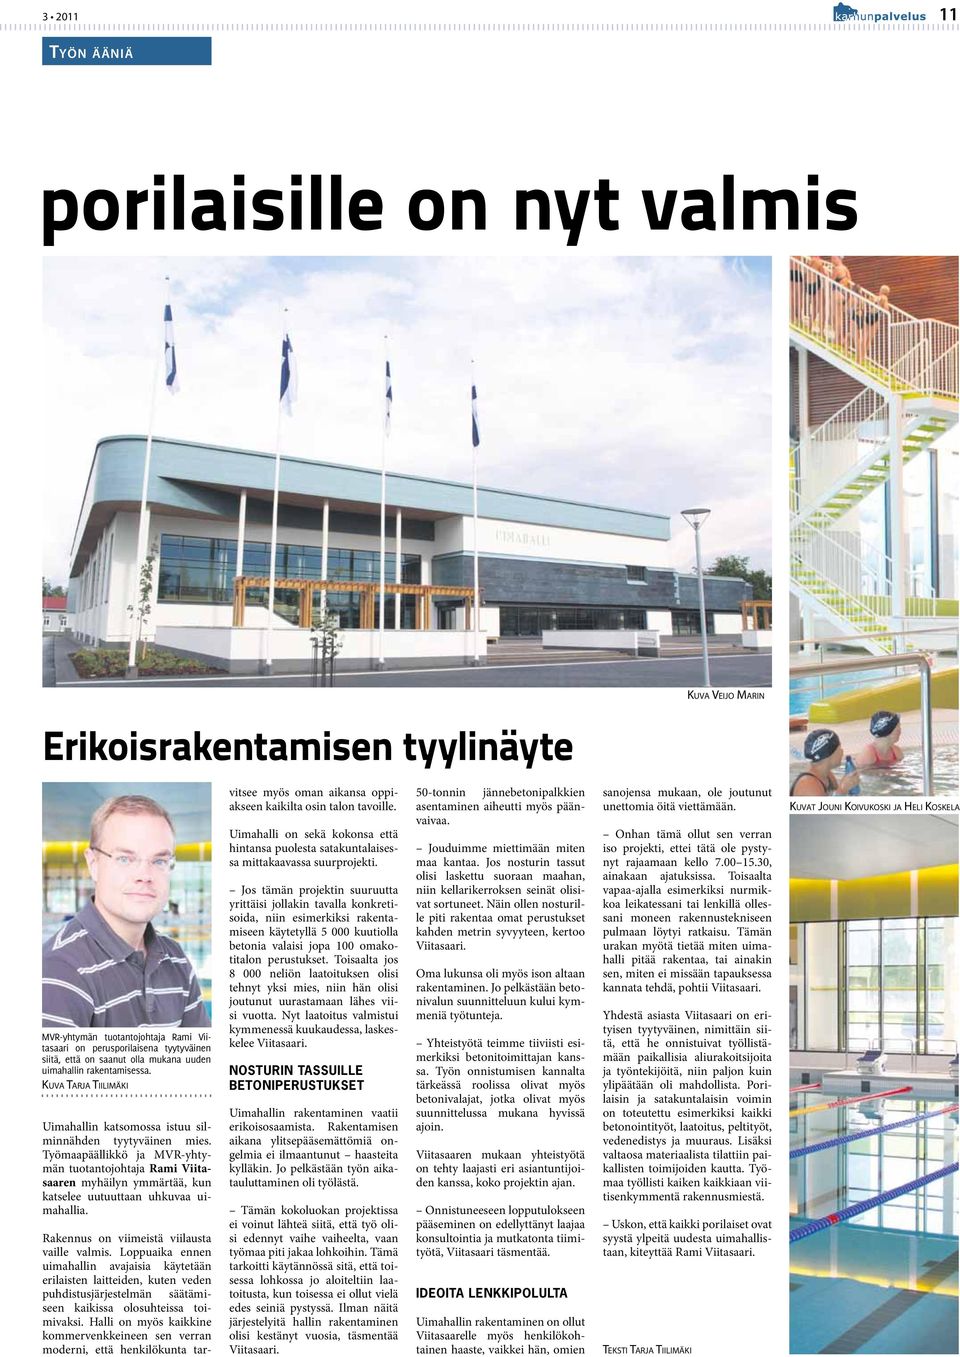 Työmaapäällikkö ja MVR-yhtymän tuotantojohtaja Rami Viitasaaren myhäilyn ymmärtää, kun katselee uutuuttaan uhkuvaa uimahallia. Rakennus on viimeistä viilausta vaille valmis.